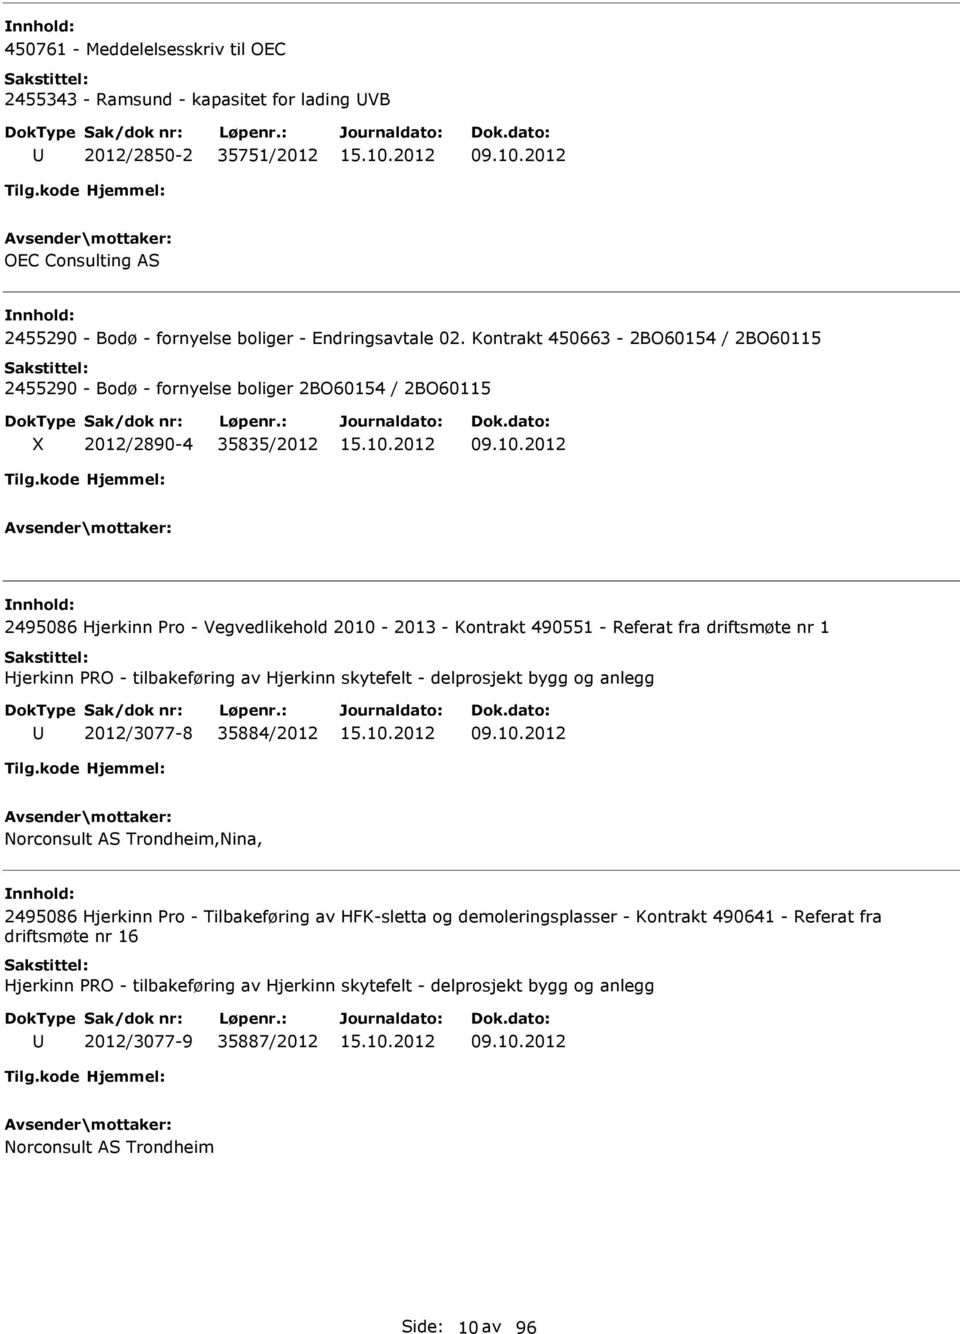 2012 2495086 Hjerkinn ro - Vegvedlikehold 2010-2013 - Kontrakt 490551 - Referat fra driftsmøte nr 1 Hjerkinn O - tilbakeføring av Hjerkinn skytefelt - delprosjekt bygg og anlegg 2012/3077-8